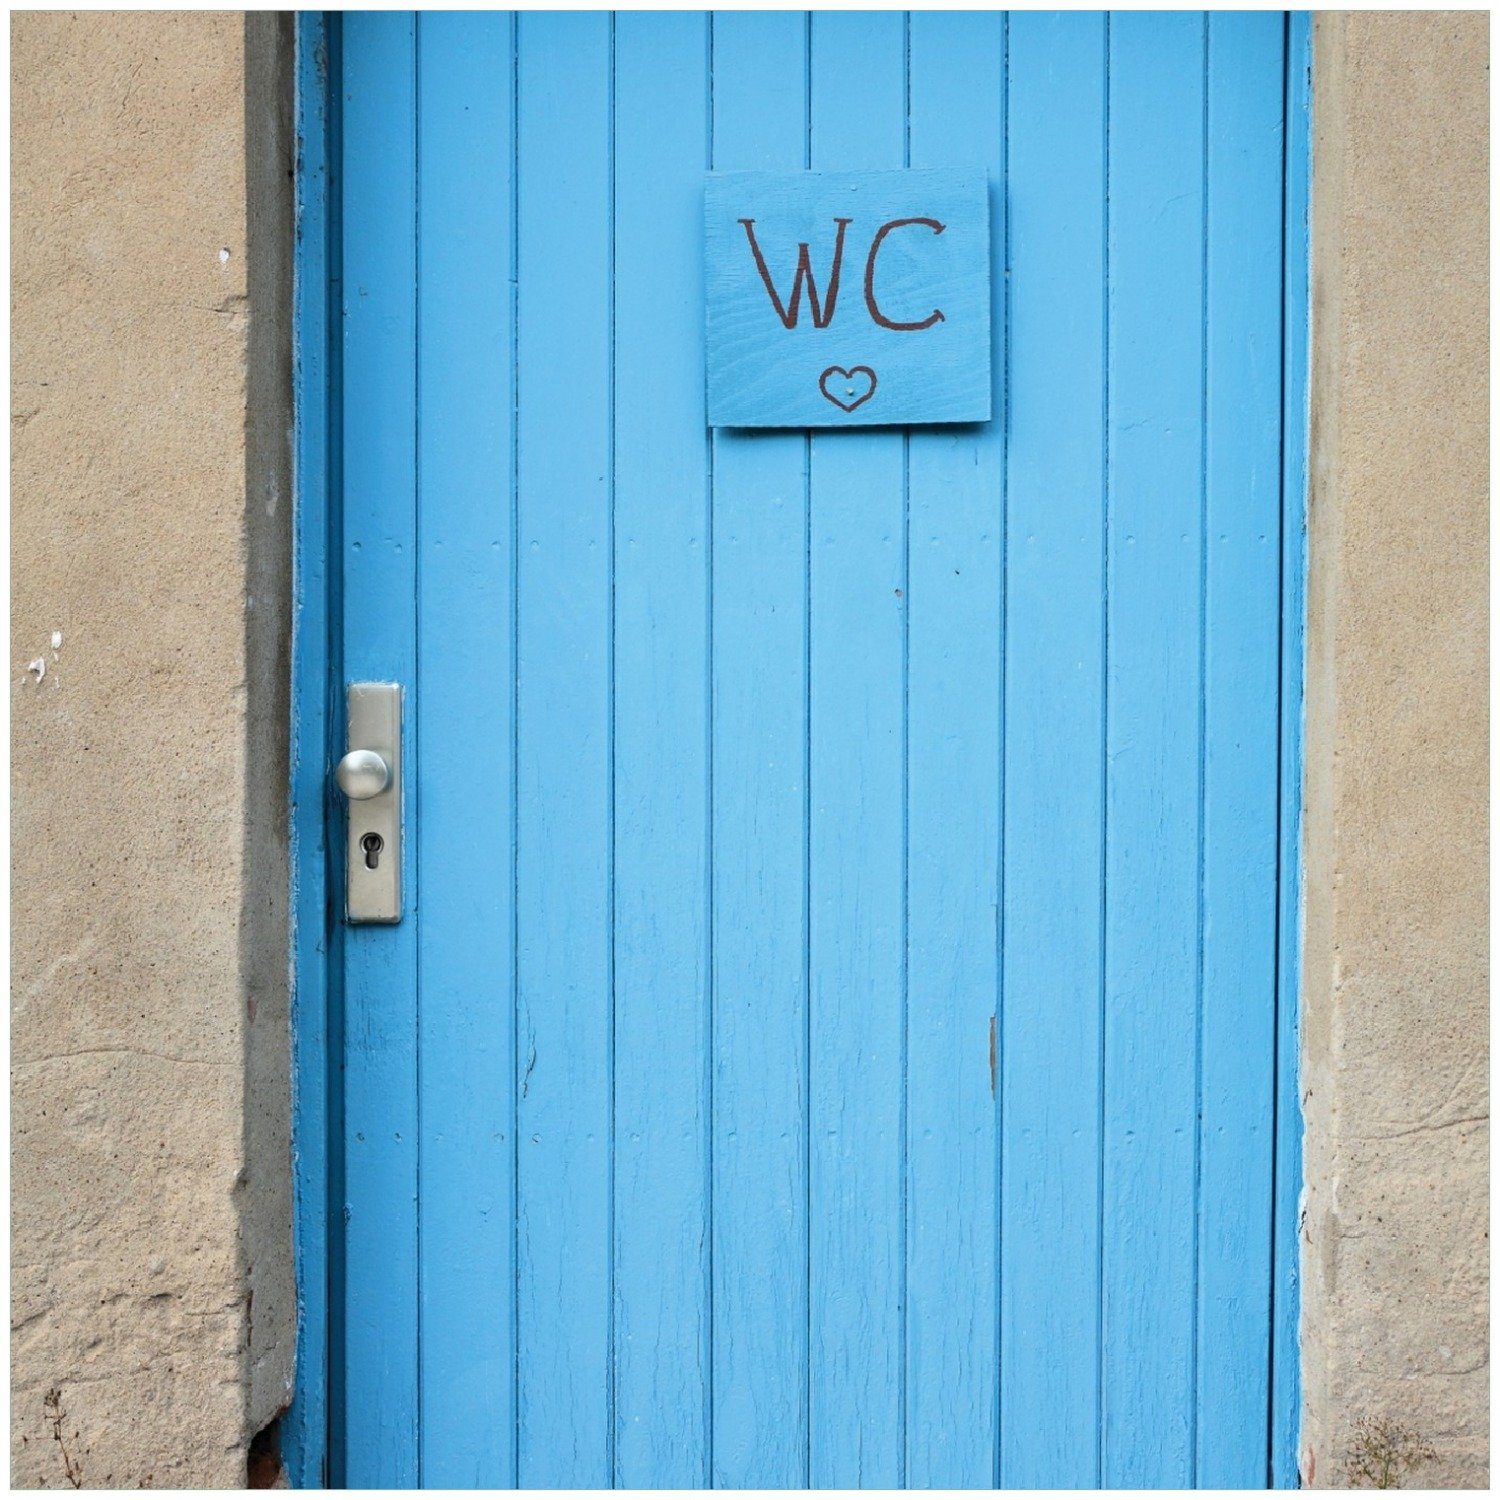 Fabrik verlassenen Toilette in einer Tür Memoboard Wallario in Blaue Magdeburg einer